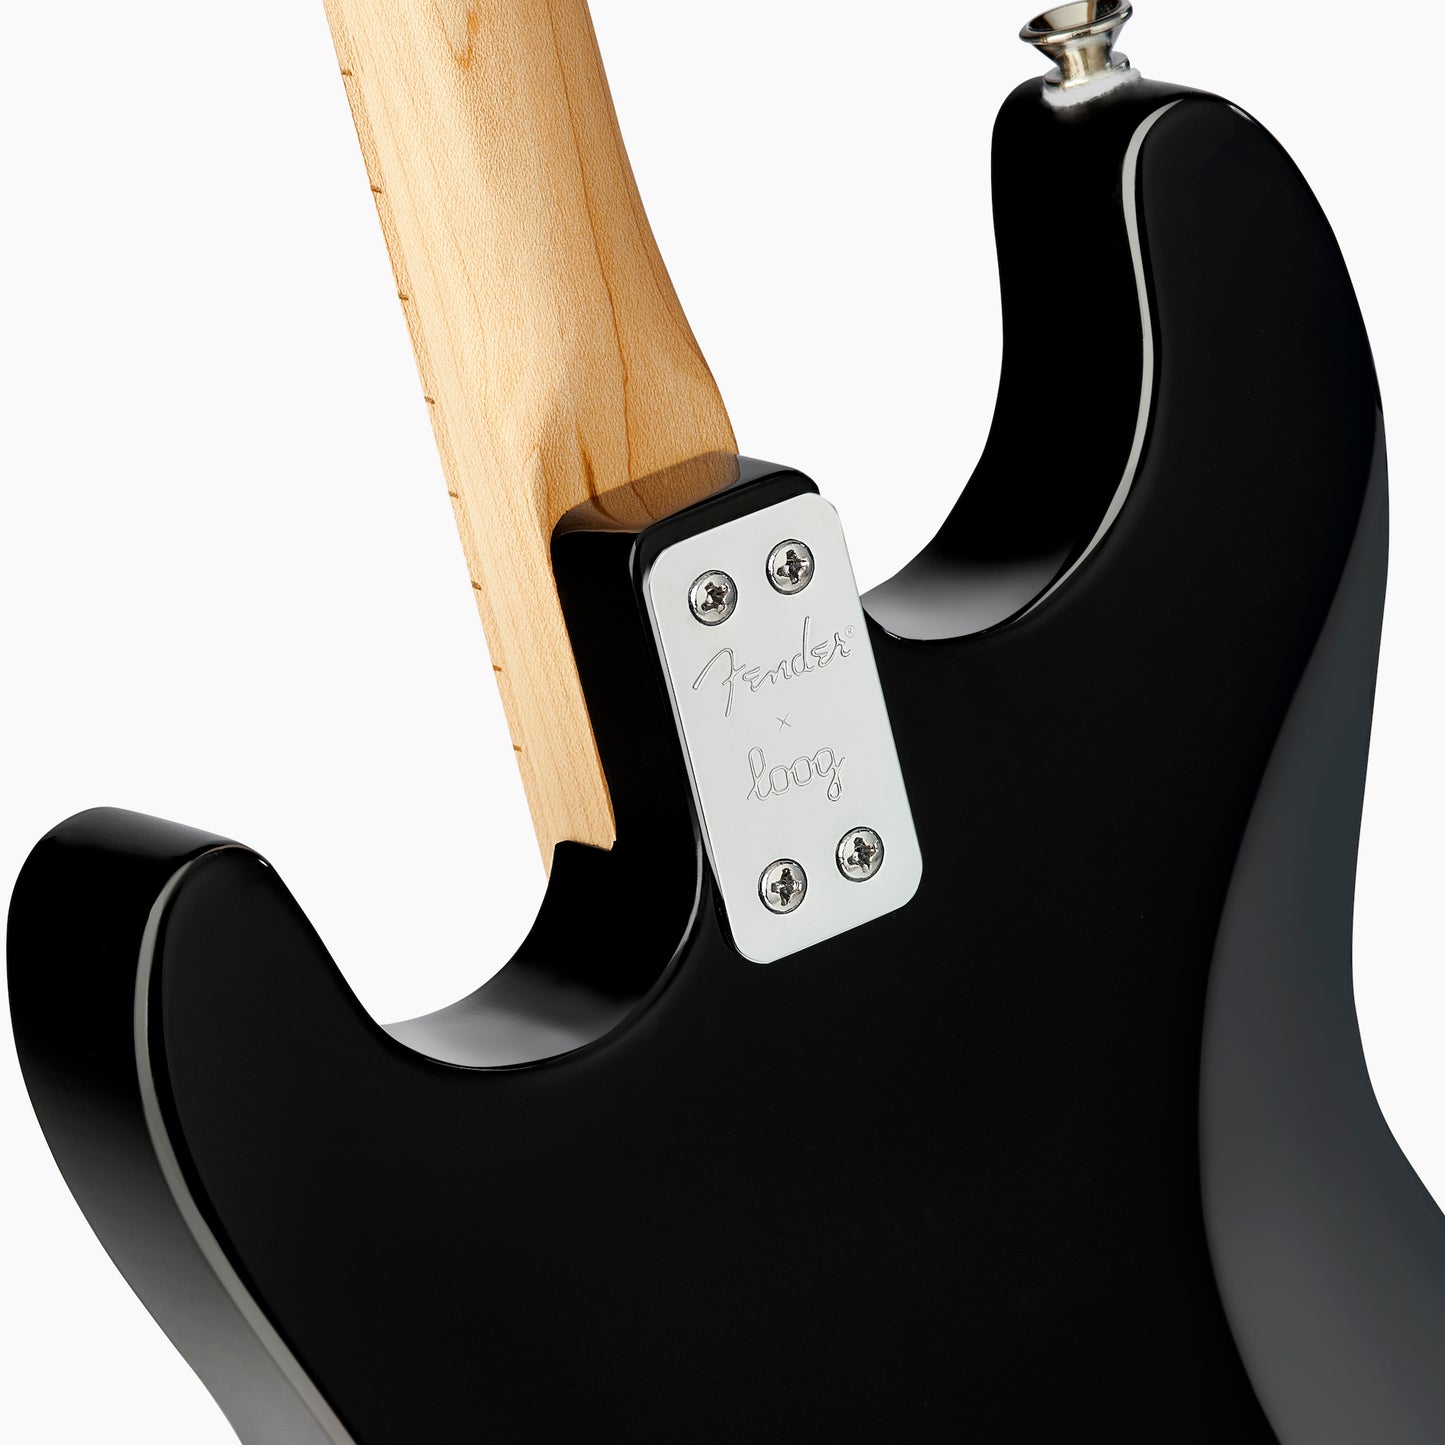 stratocaster x loog stratocaster-x-loog stratocaster-black Stratocaster (Black)